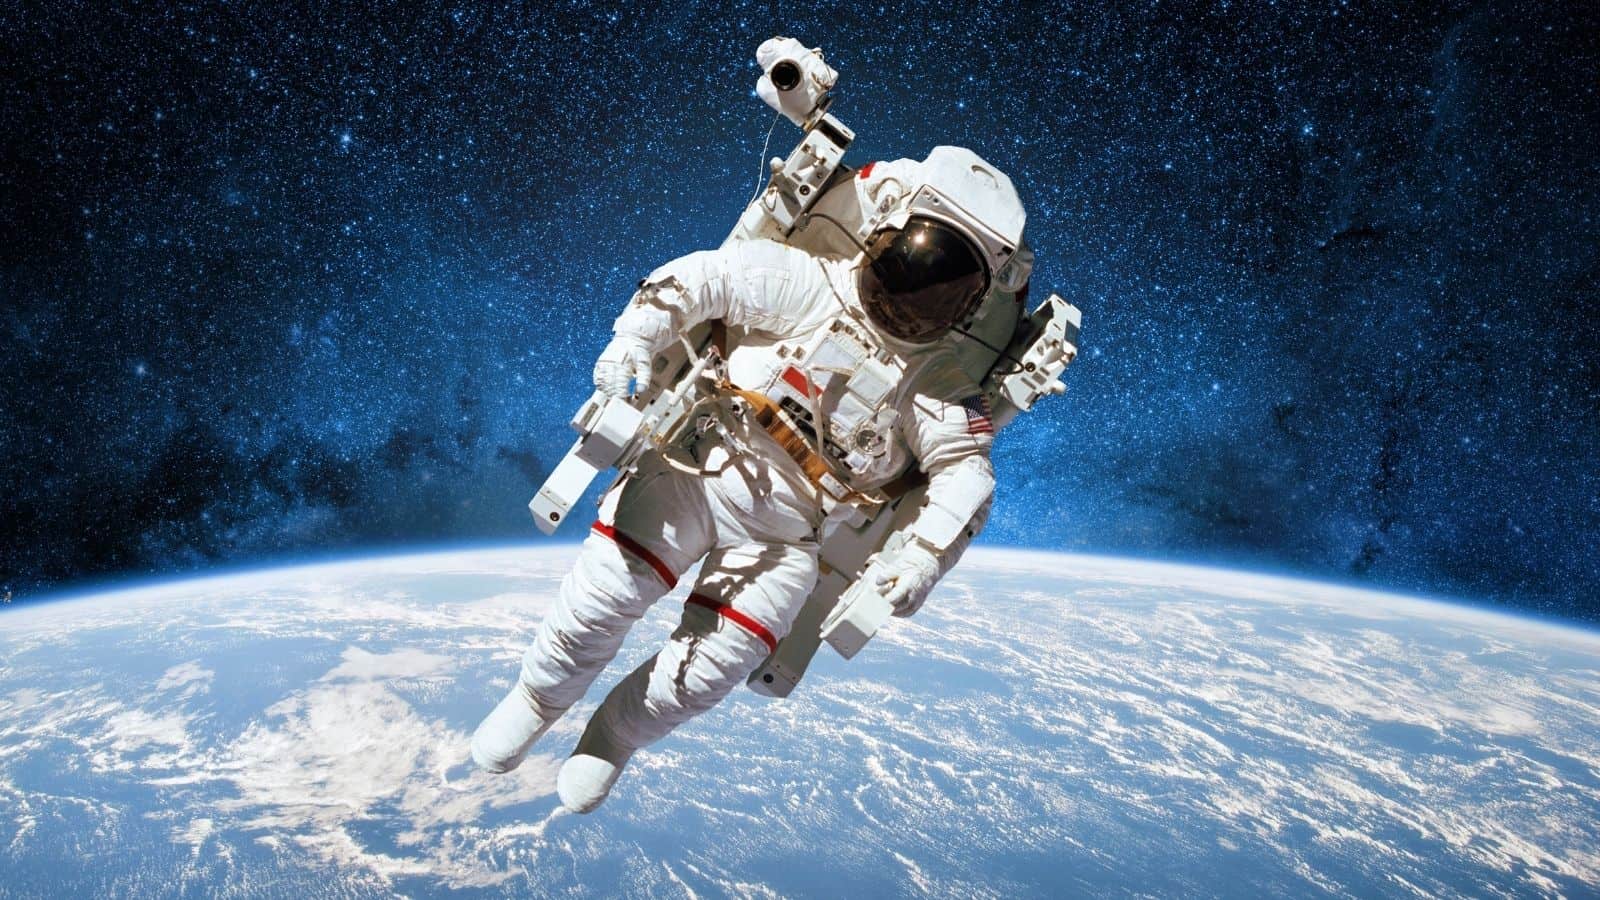 Astronauti: la strabiliante capacita di navigare nello spazio senza gravità